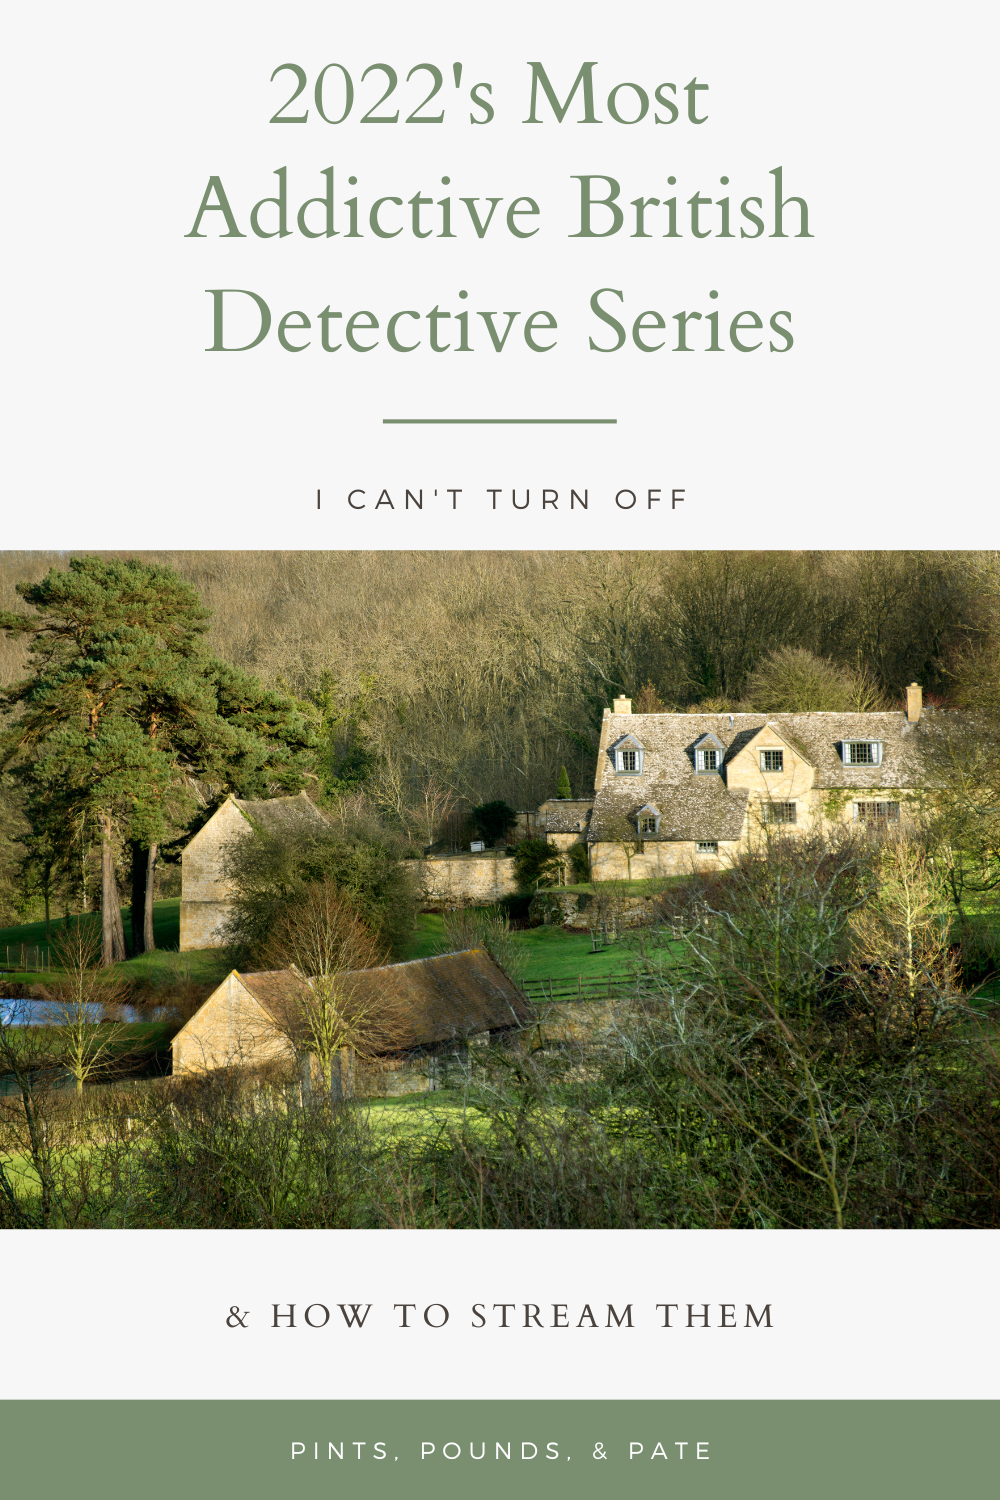 Best British Detective Series